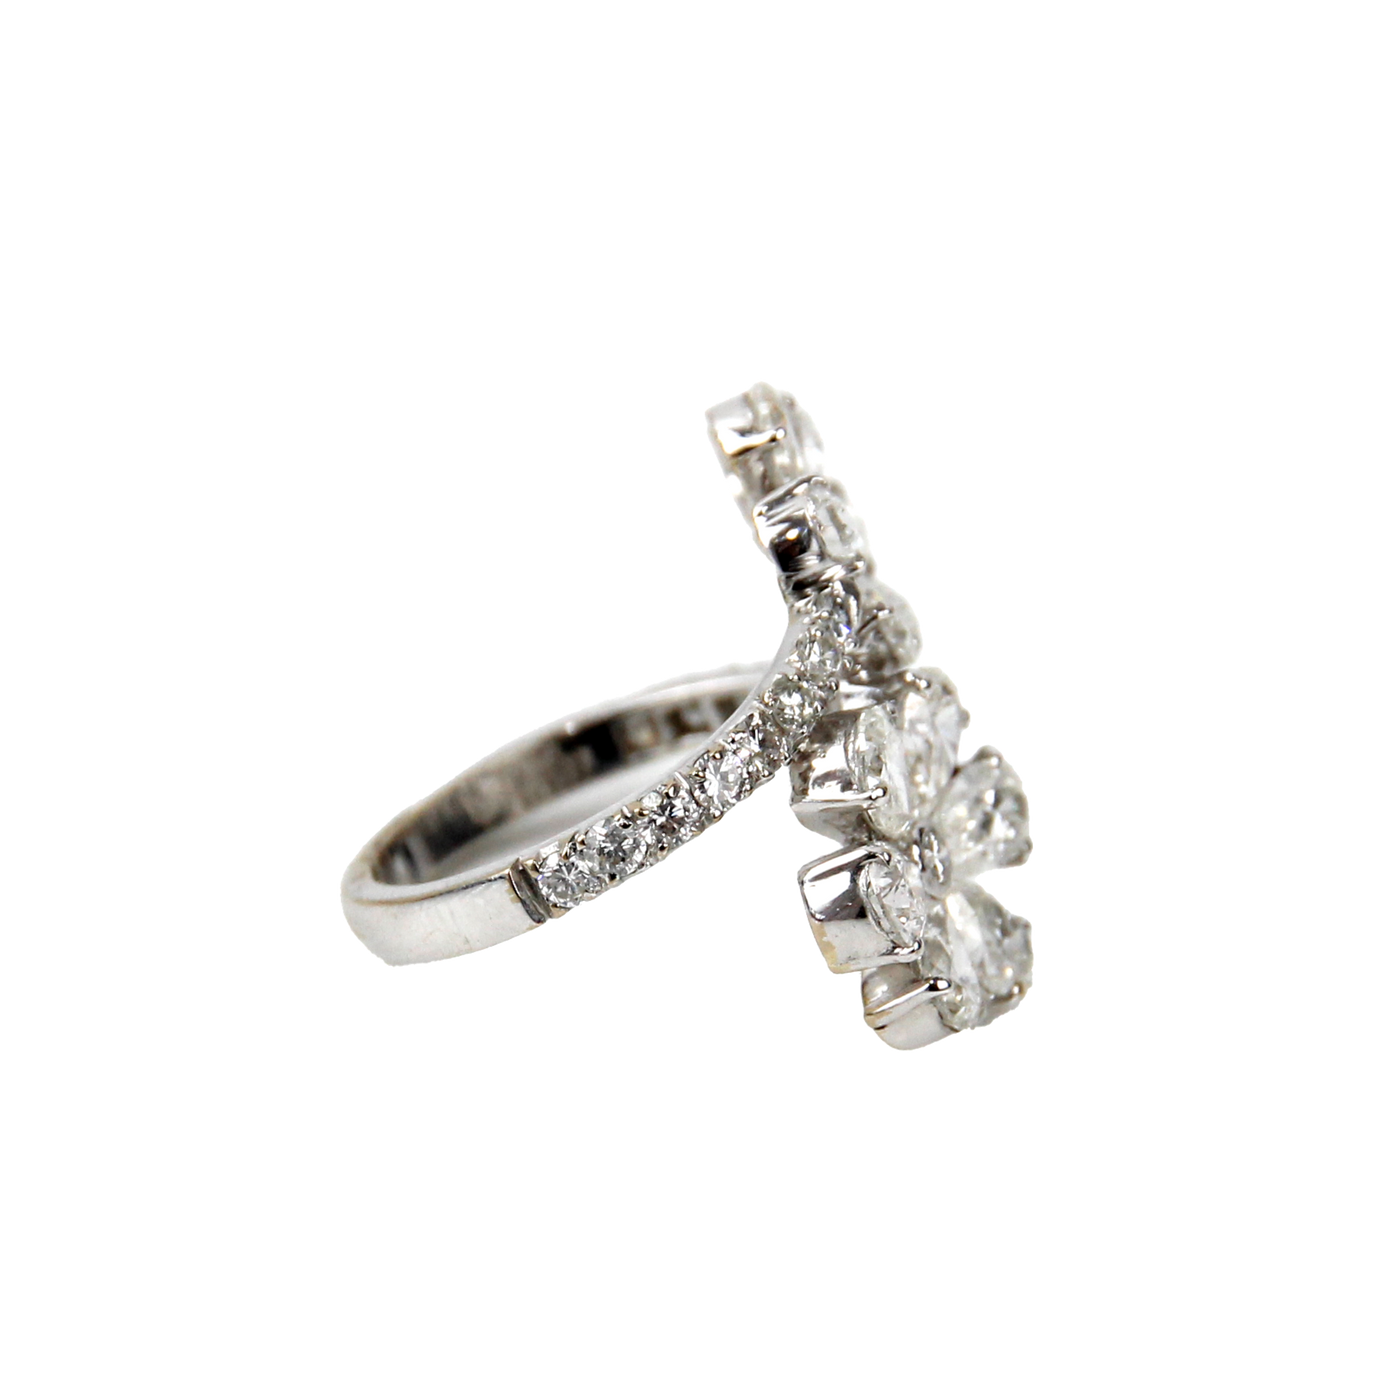 ECJ Collection 18K White Gold 3.67ctw Diamond Flower Ring